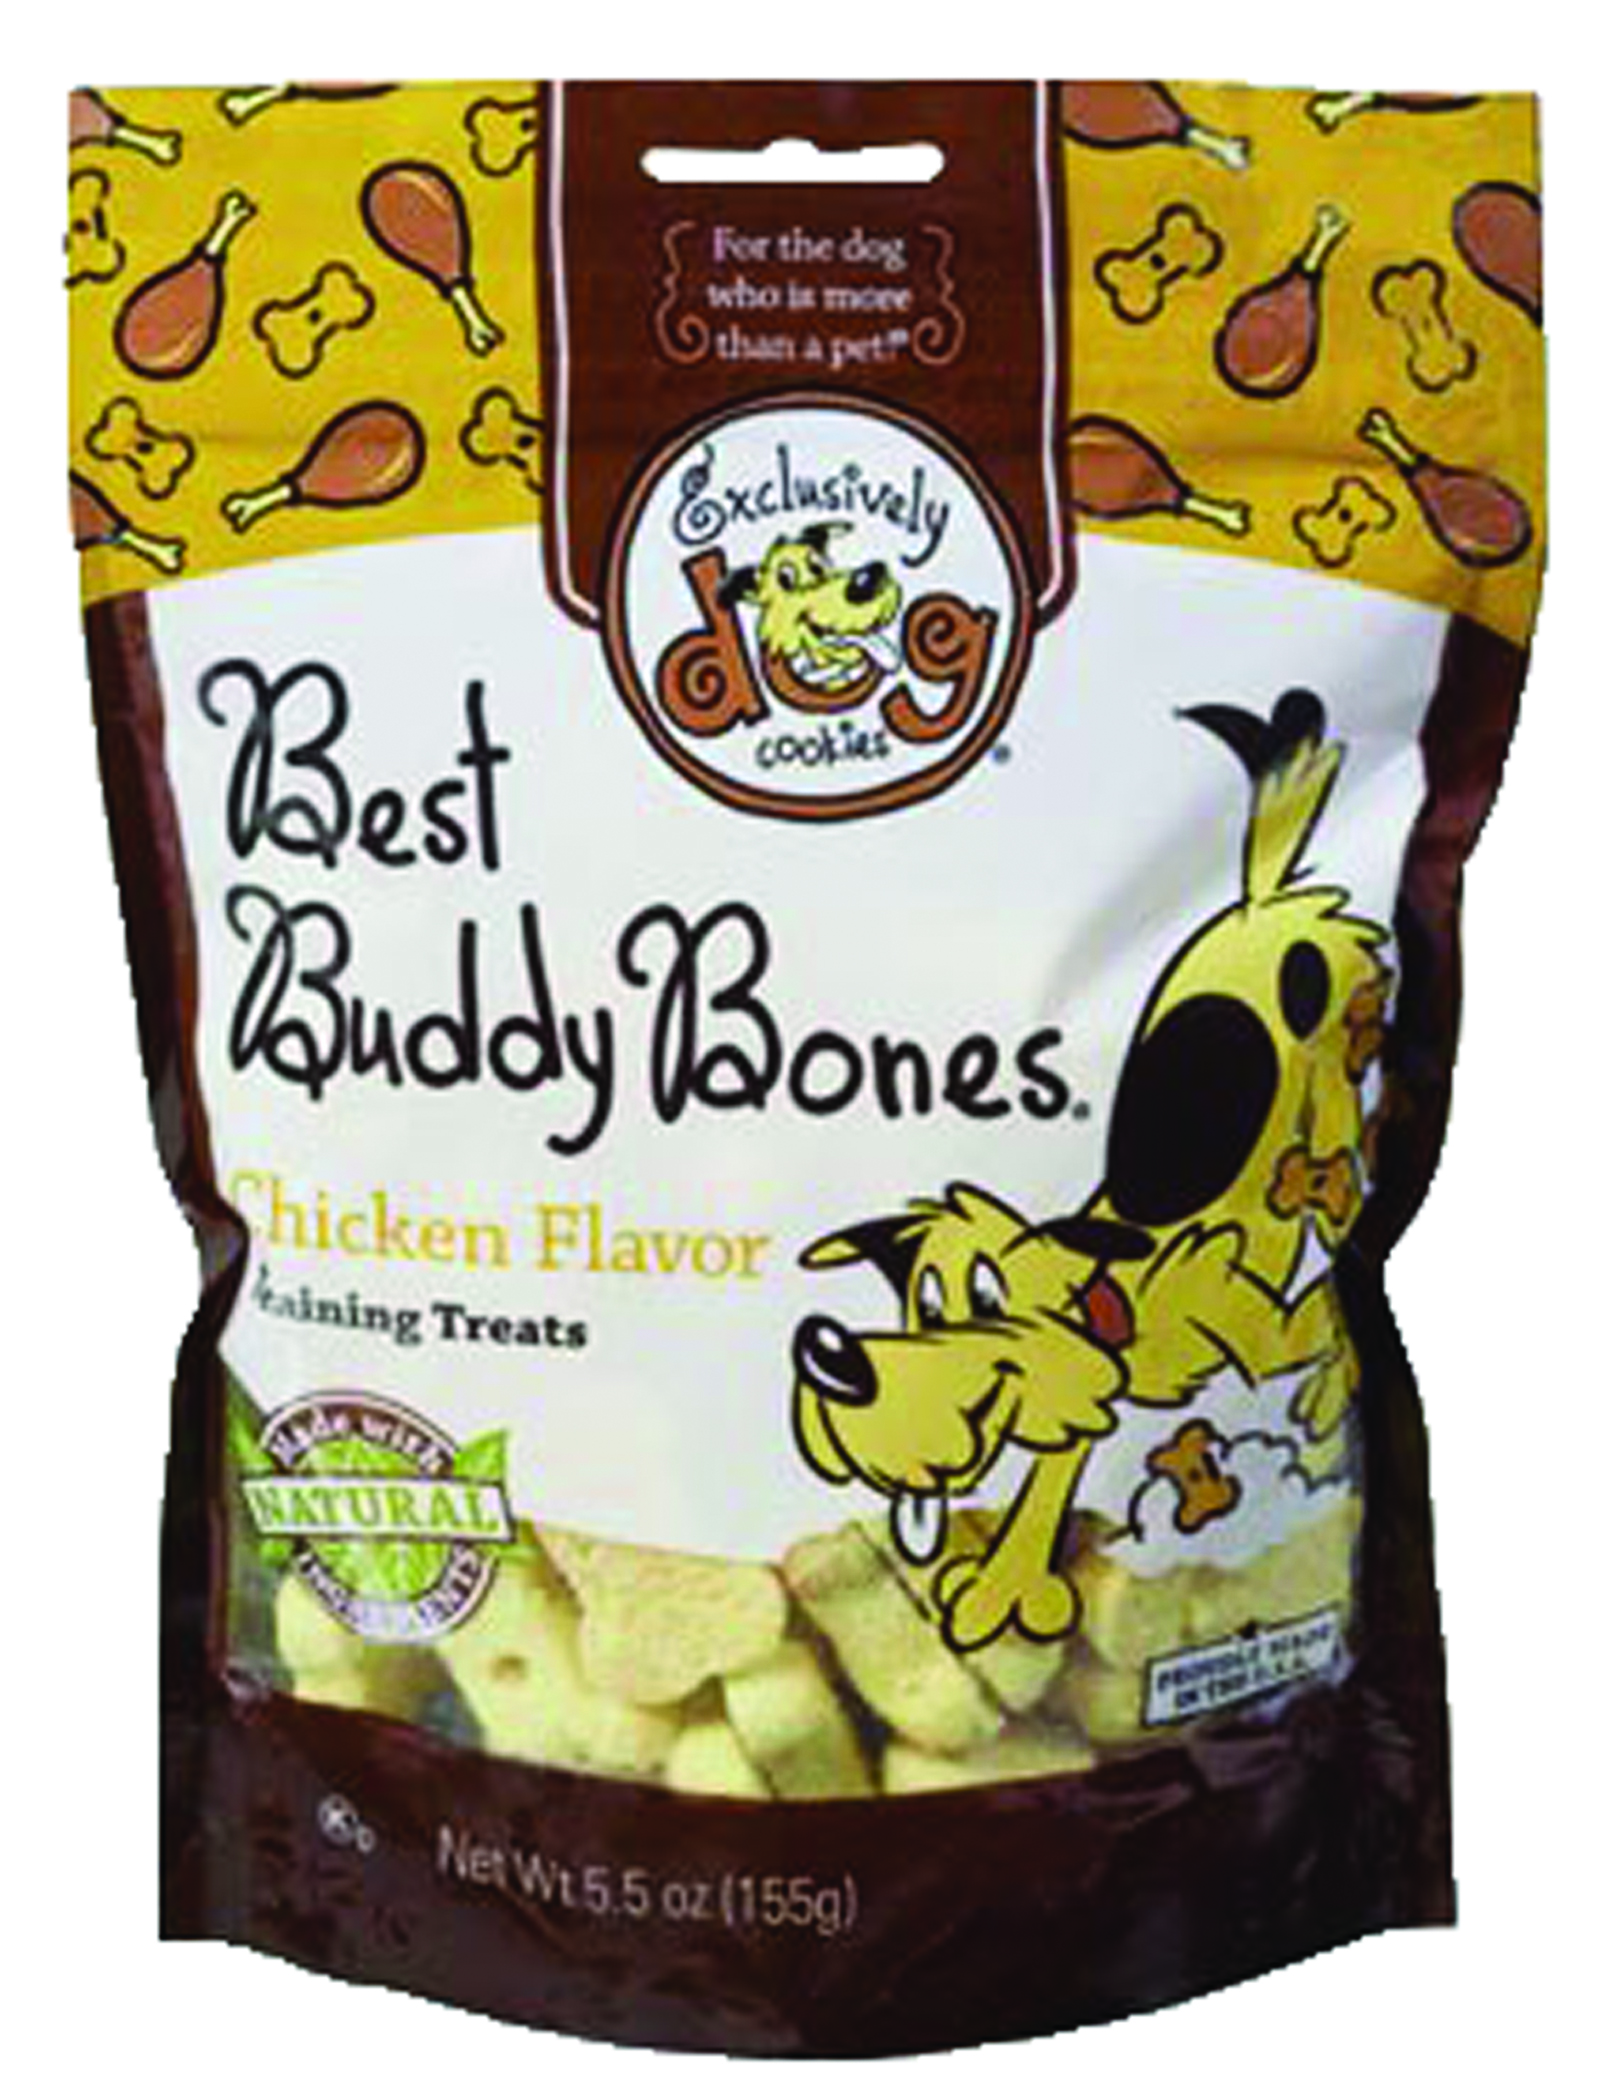 Best Buddy Bones Pt  Chicken